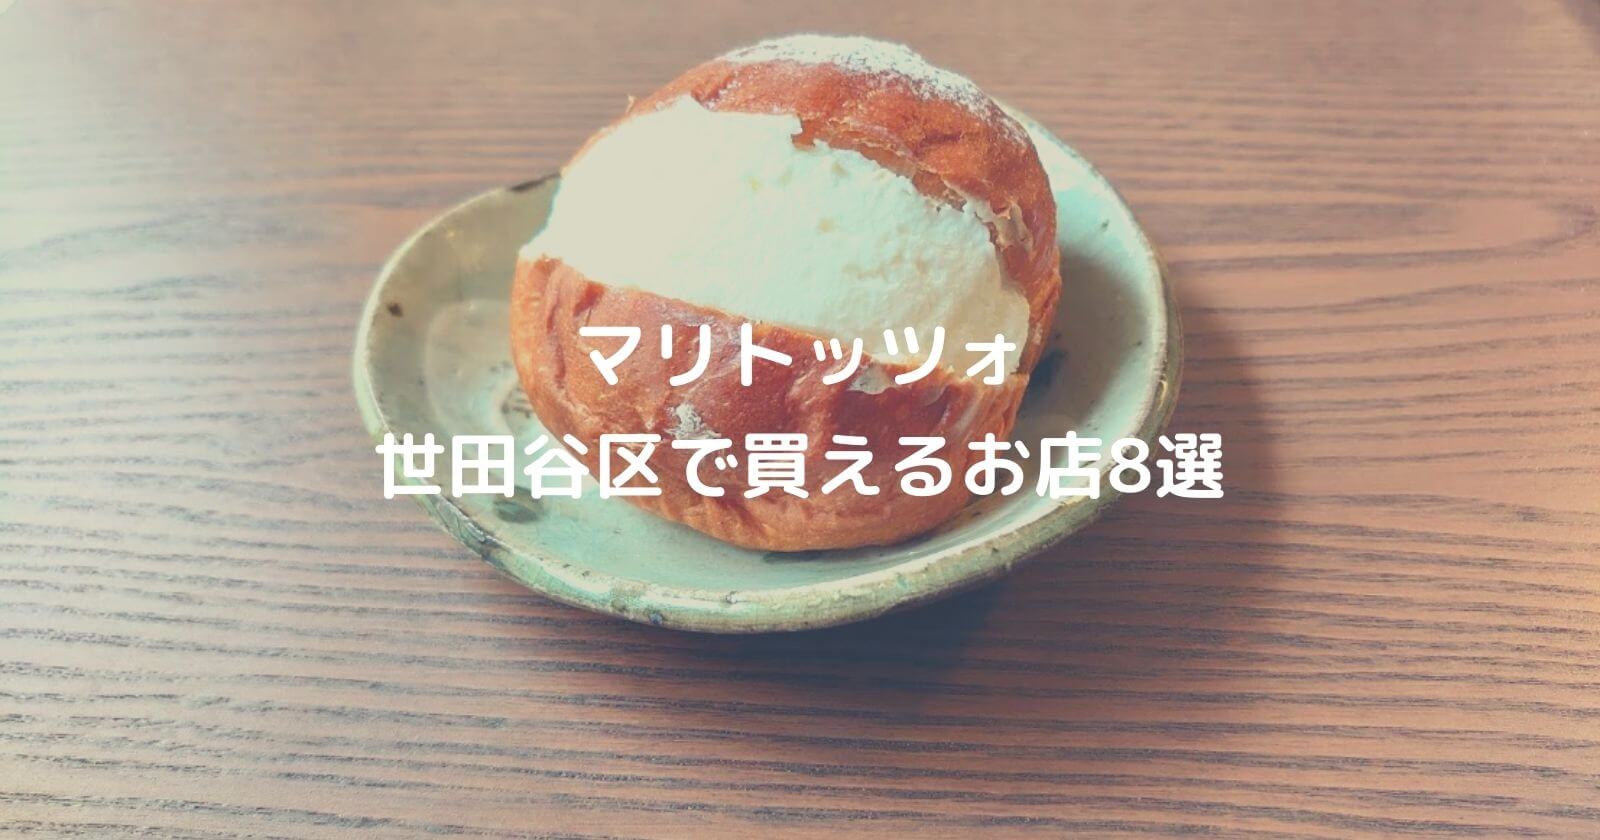 マリトッツォ 世田谷区 で買える人気パン屋 お店おすすめ8選